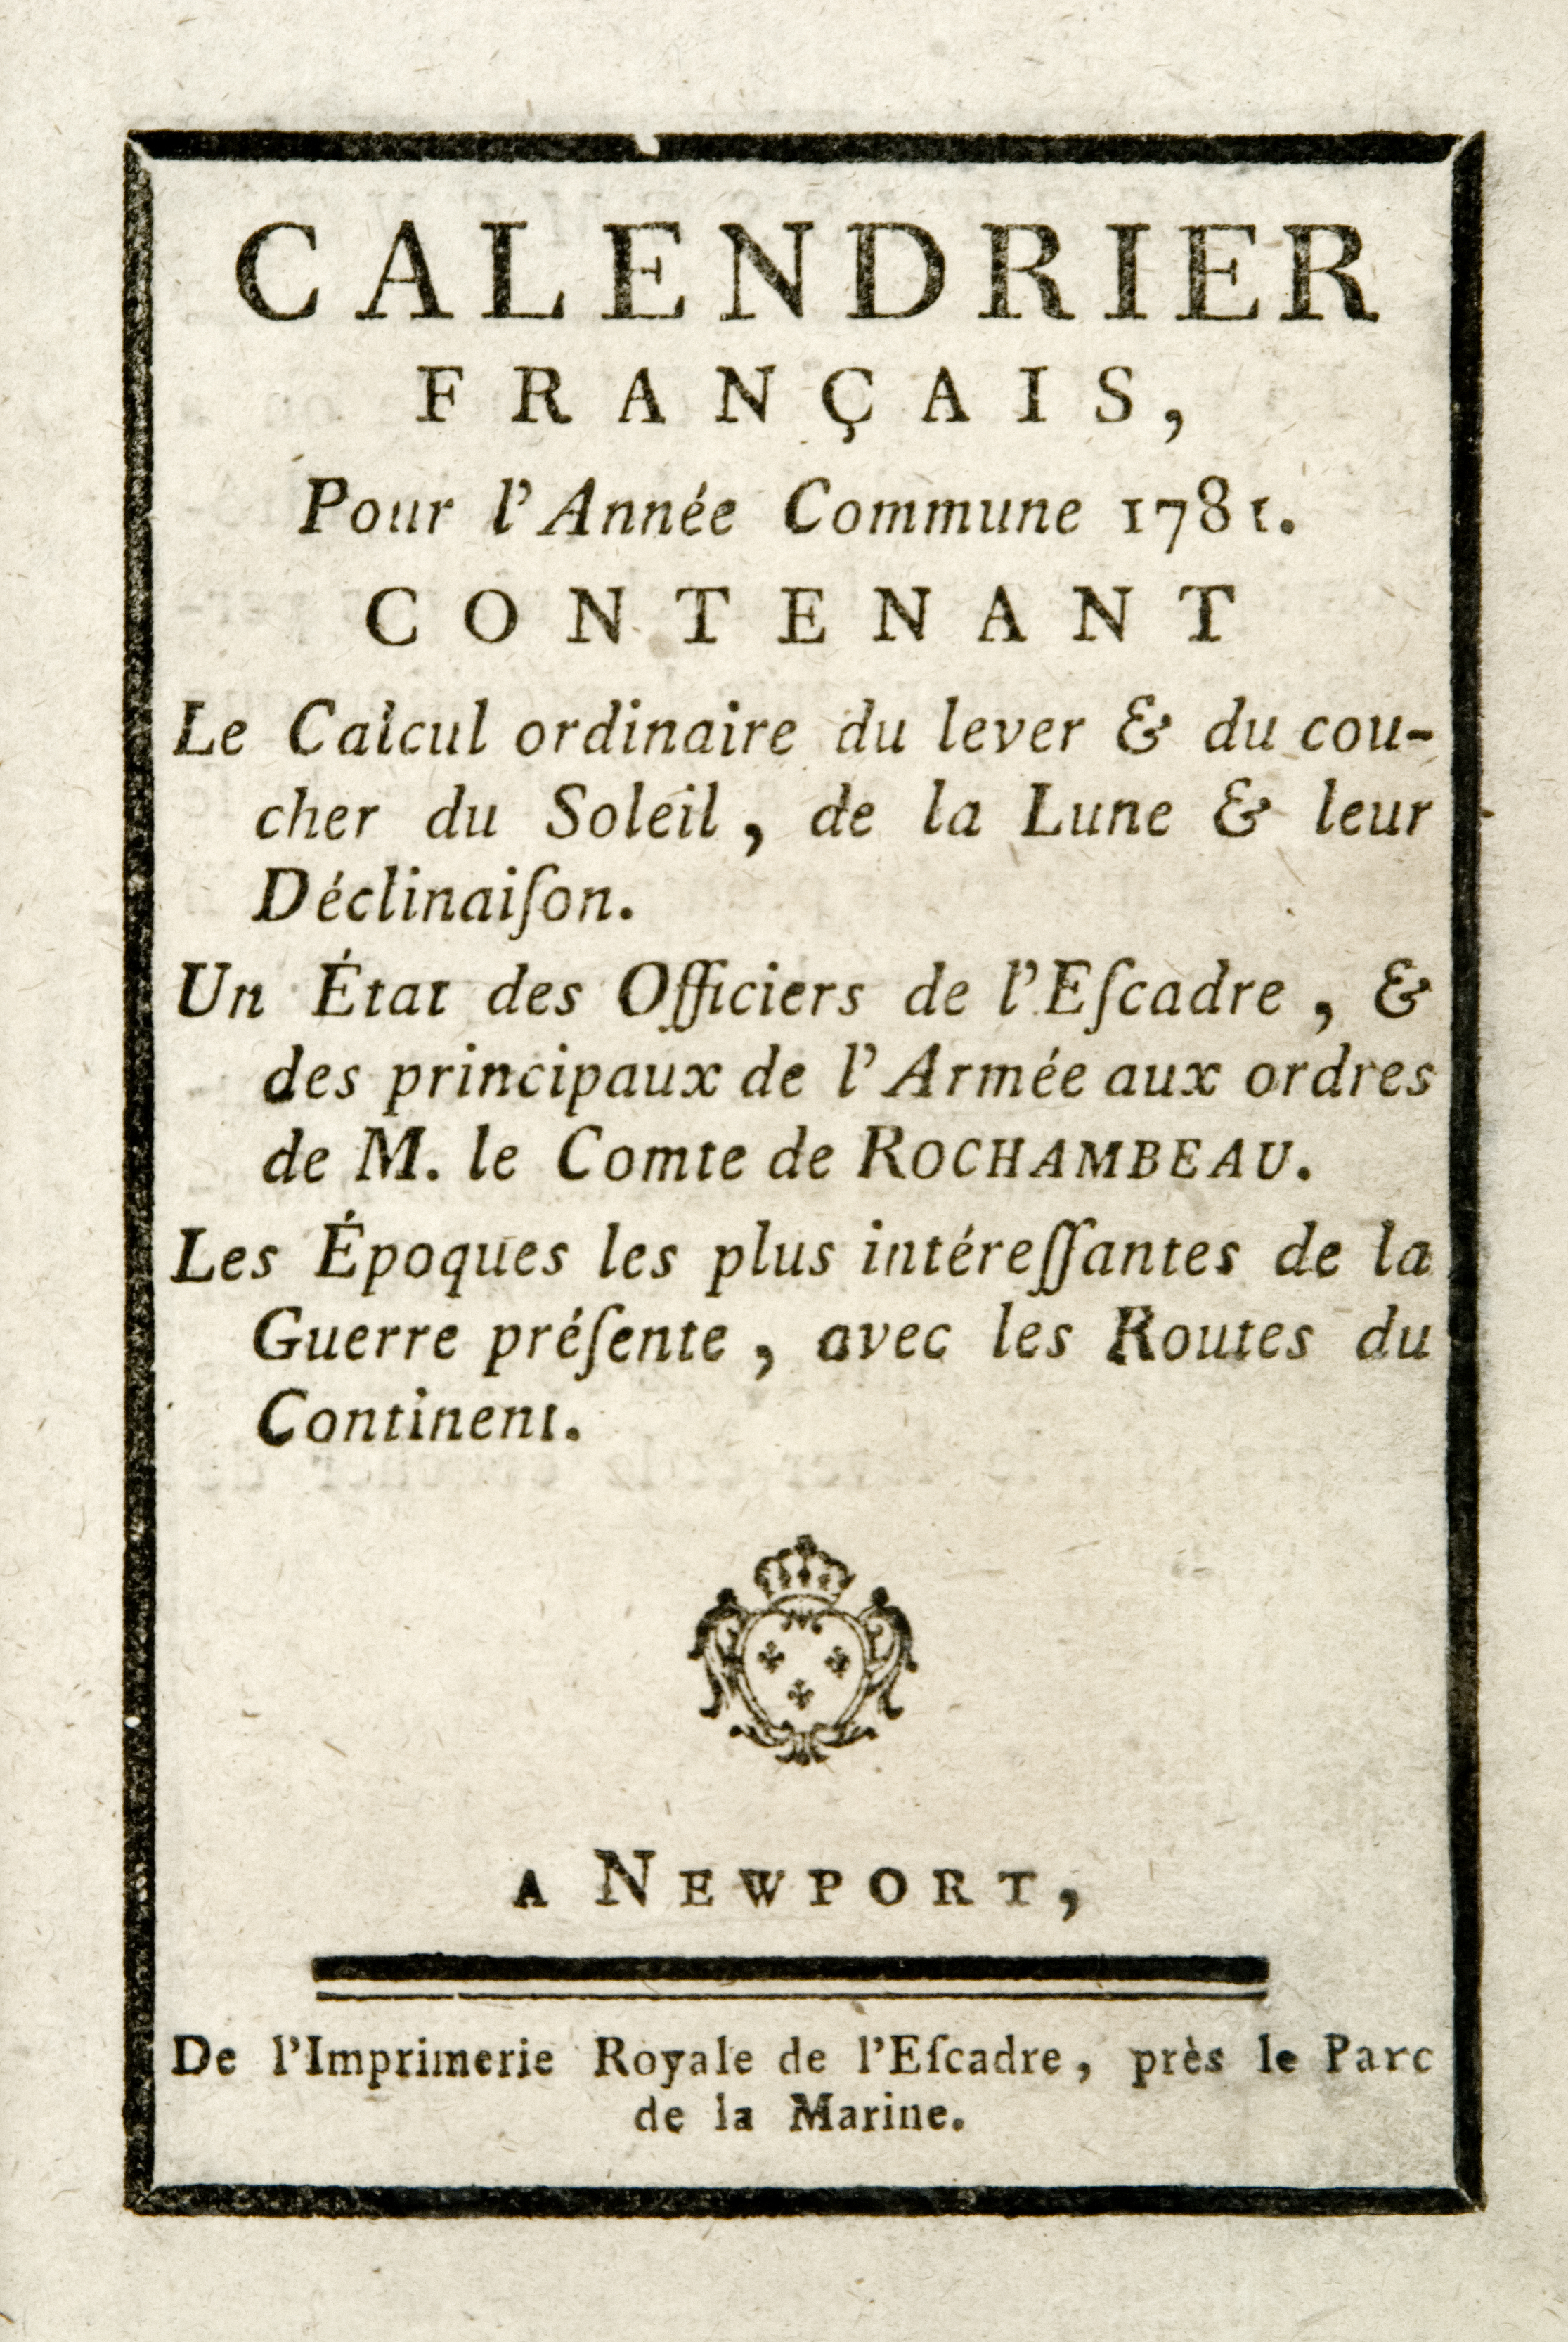 Calendrier Français, Pour l’Année Commune 1781, Newport: De l’Imprimerie Royale de l’Escadre, près le Parc de la Marine, [1781]